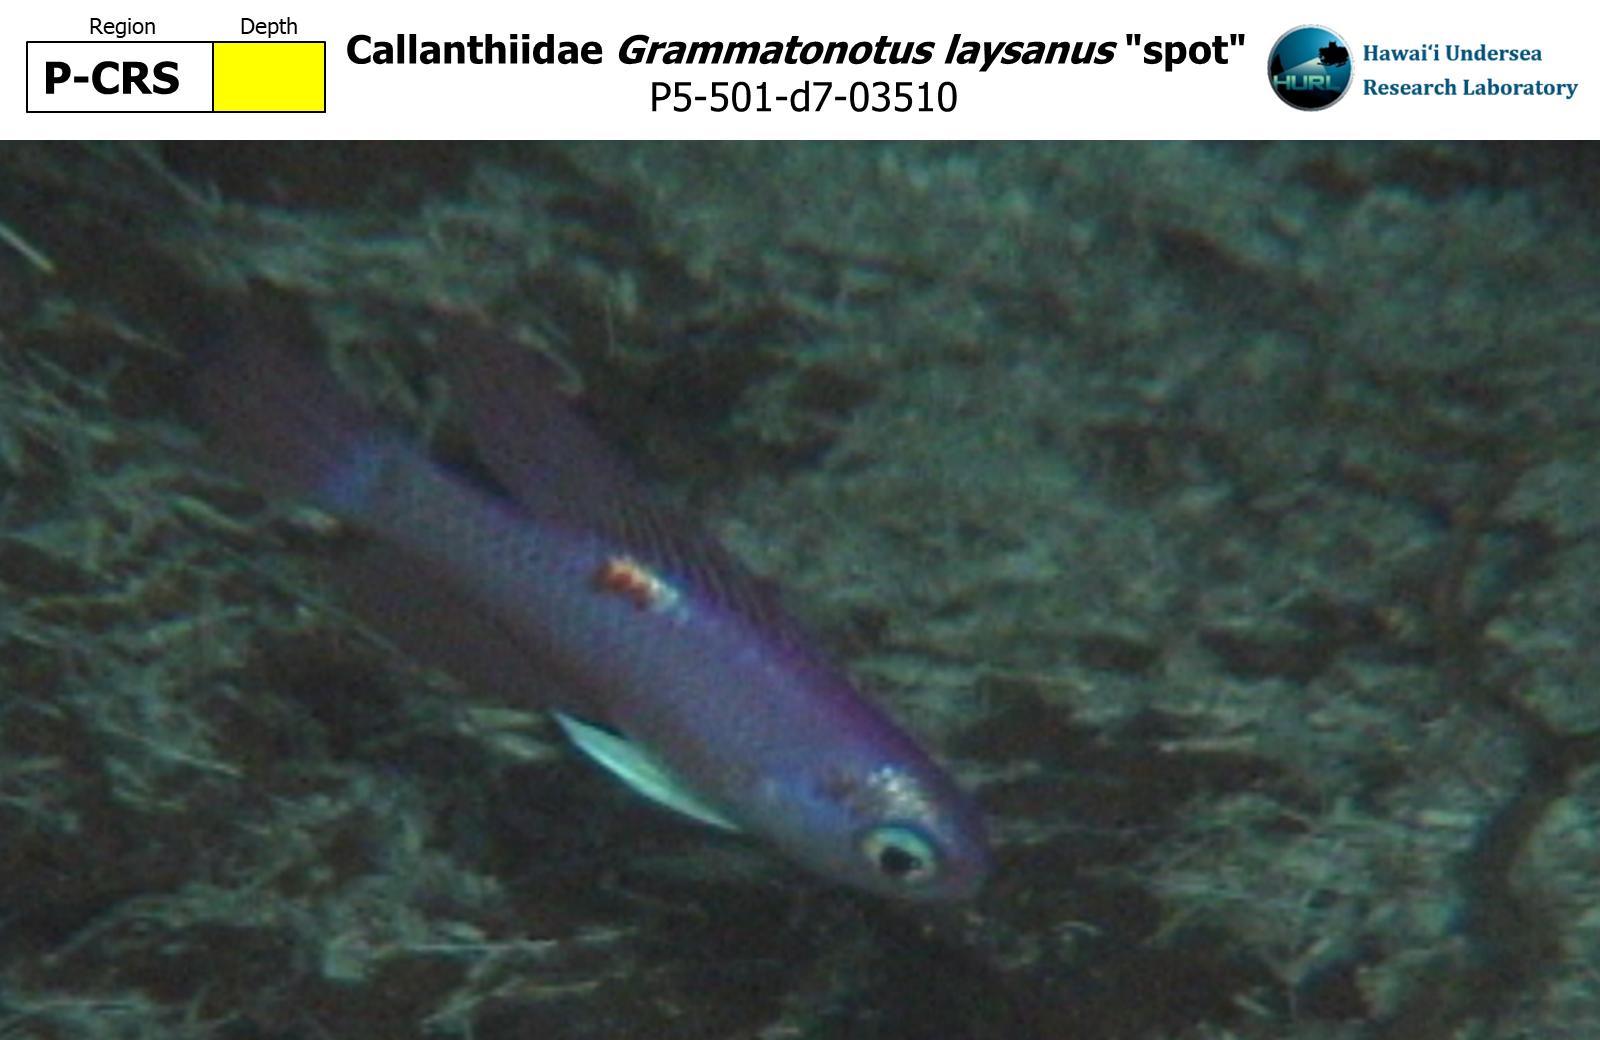 Grammatonotus laysanus "spot"